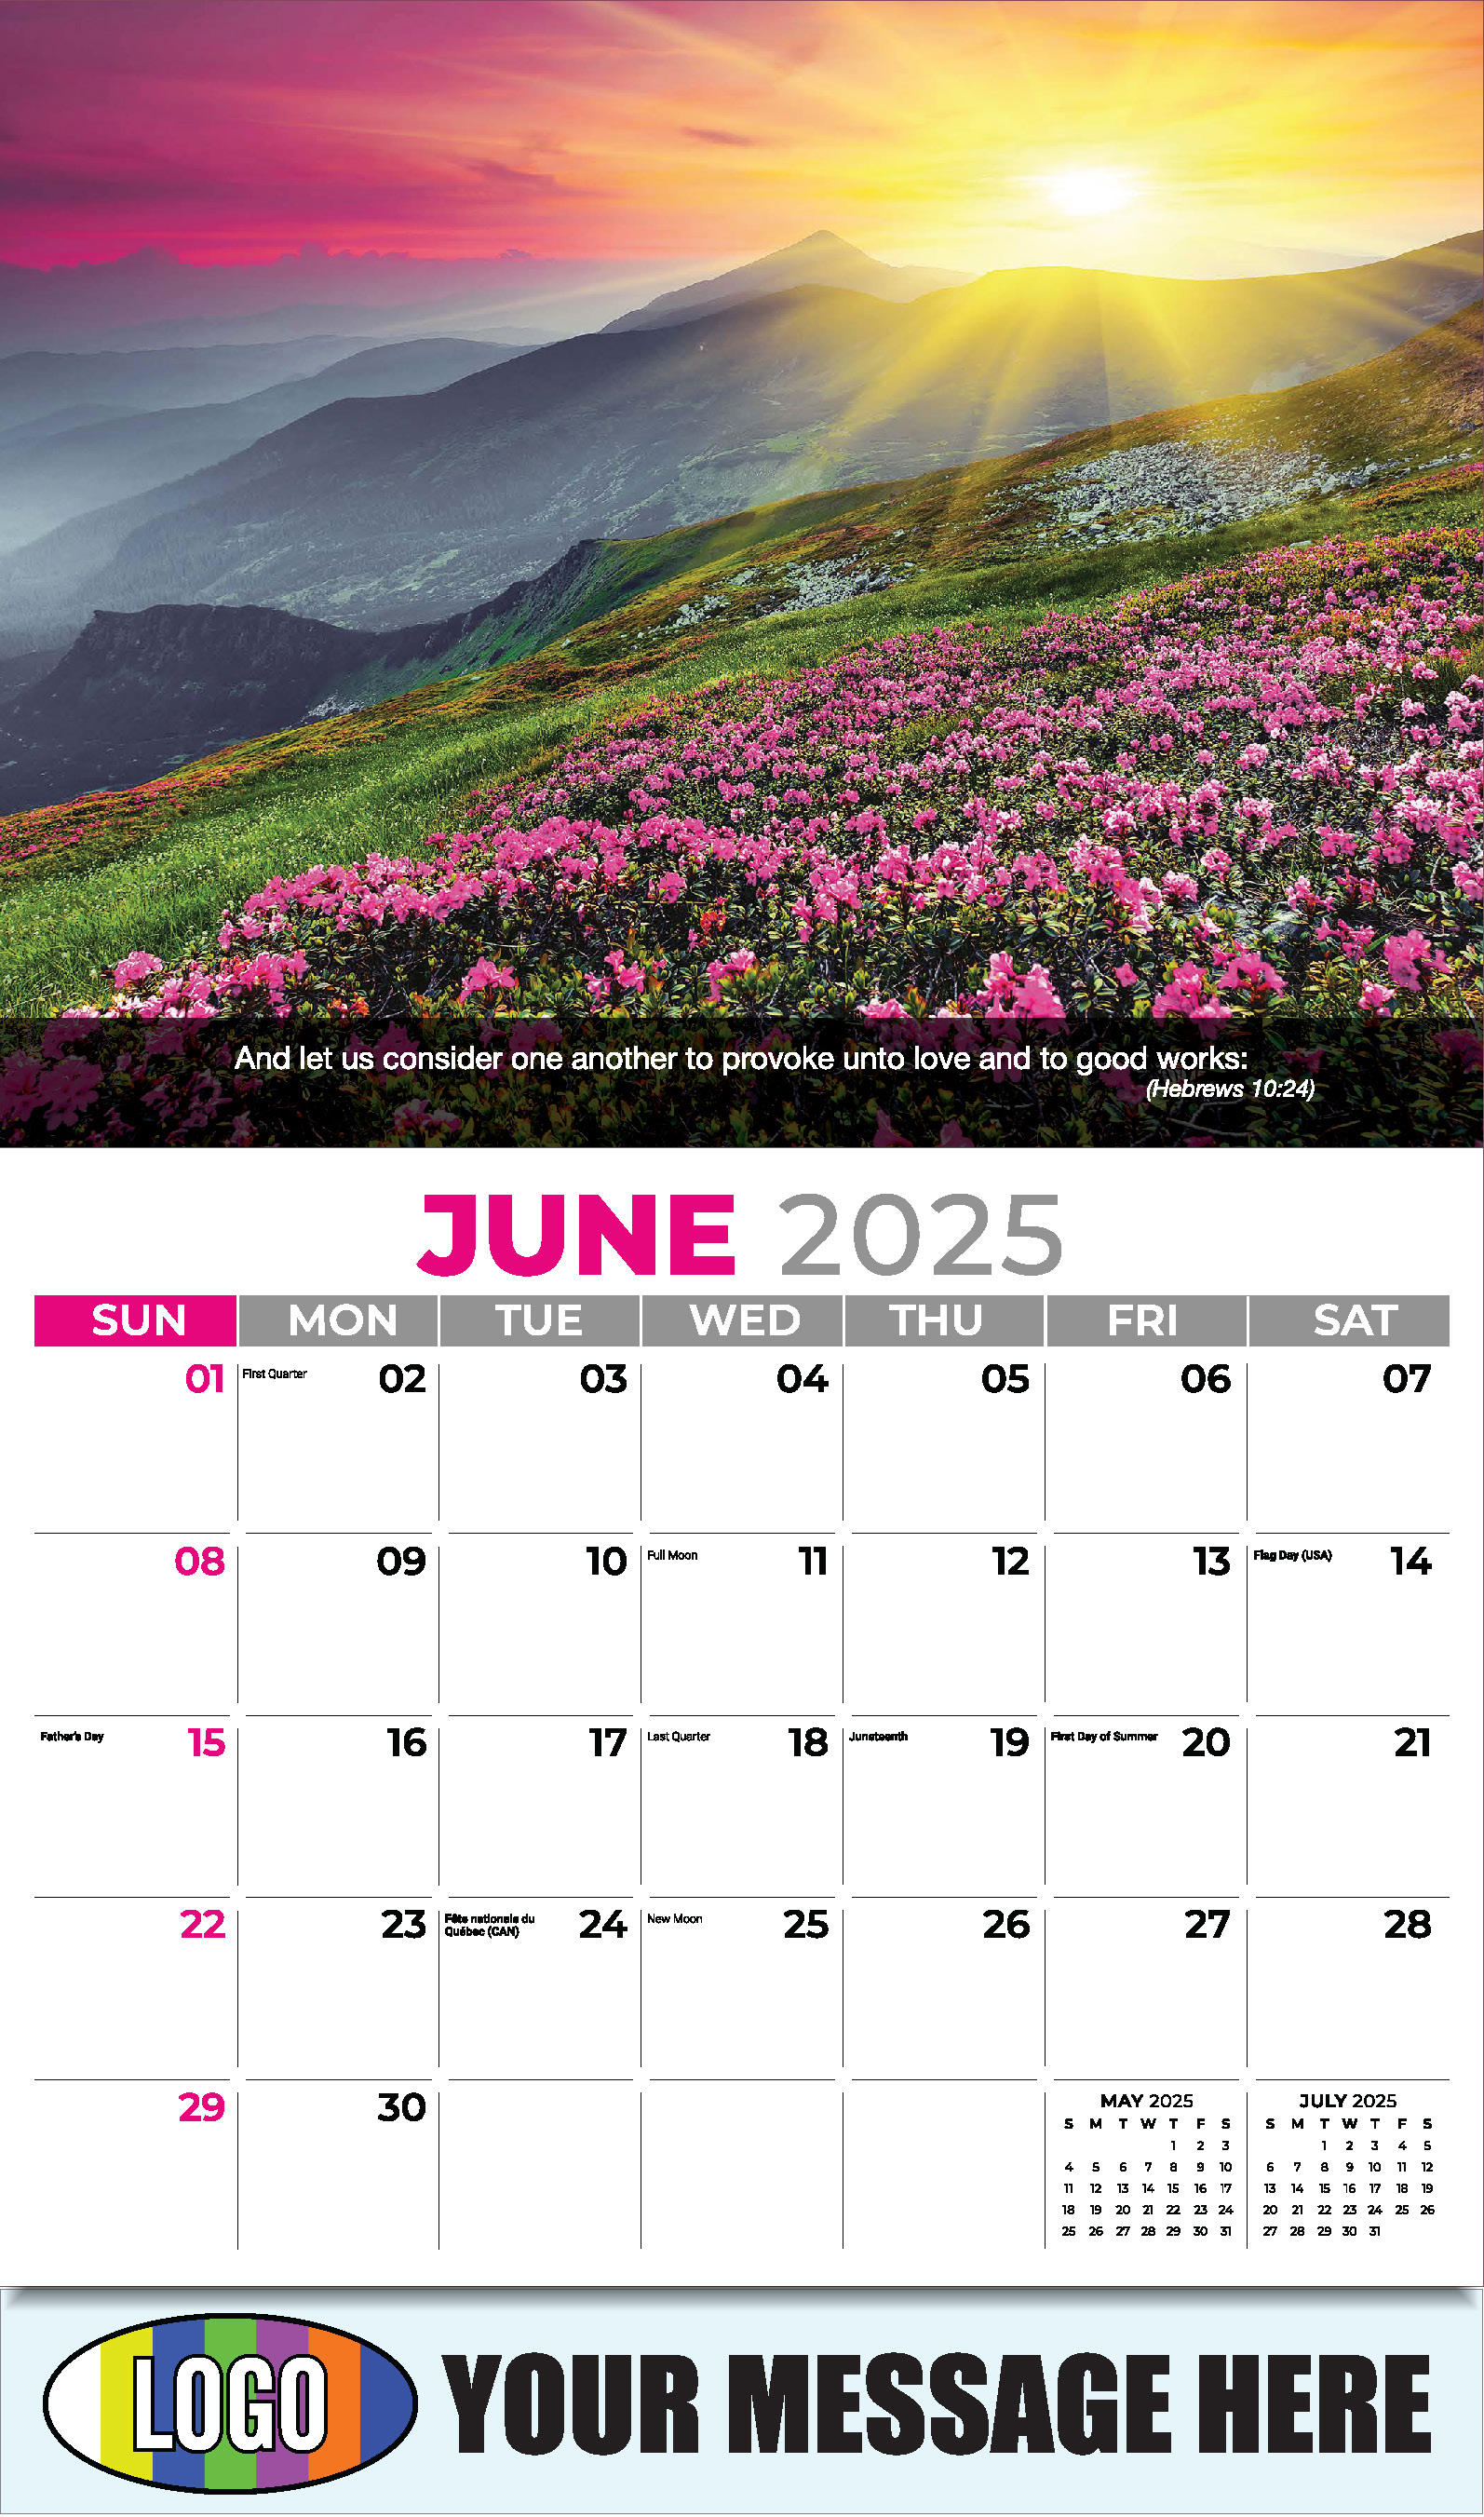 Faith Passages 2025 Christian Business Advertising Calendar - June